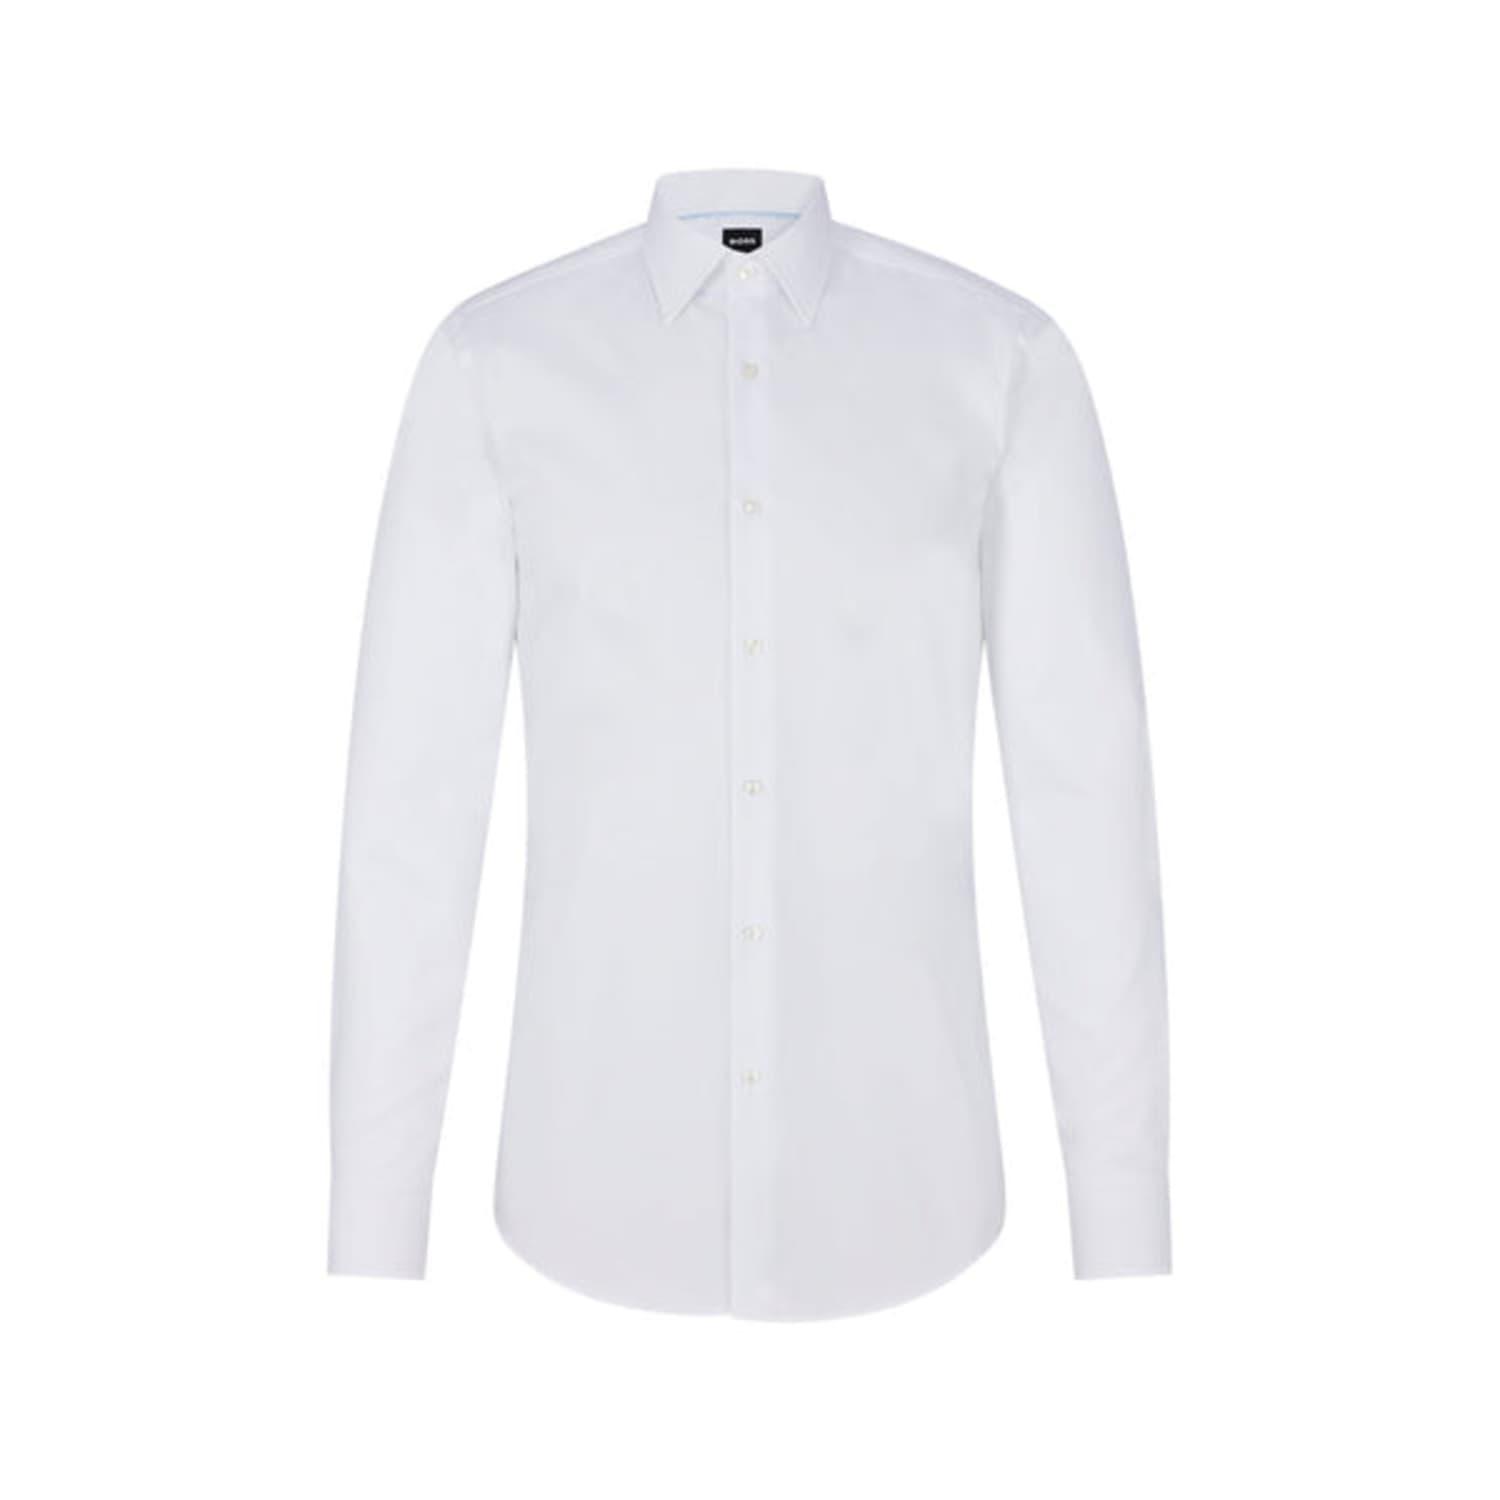 BOSS by HUGO BOSS White Slim Fit Shirt for Men | Lyst